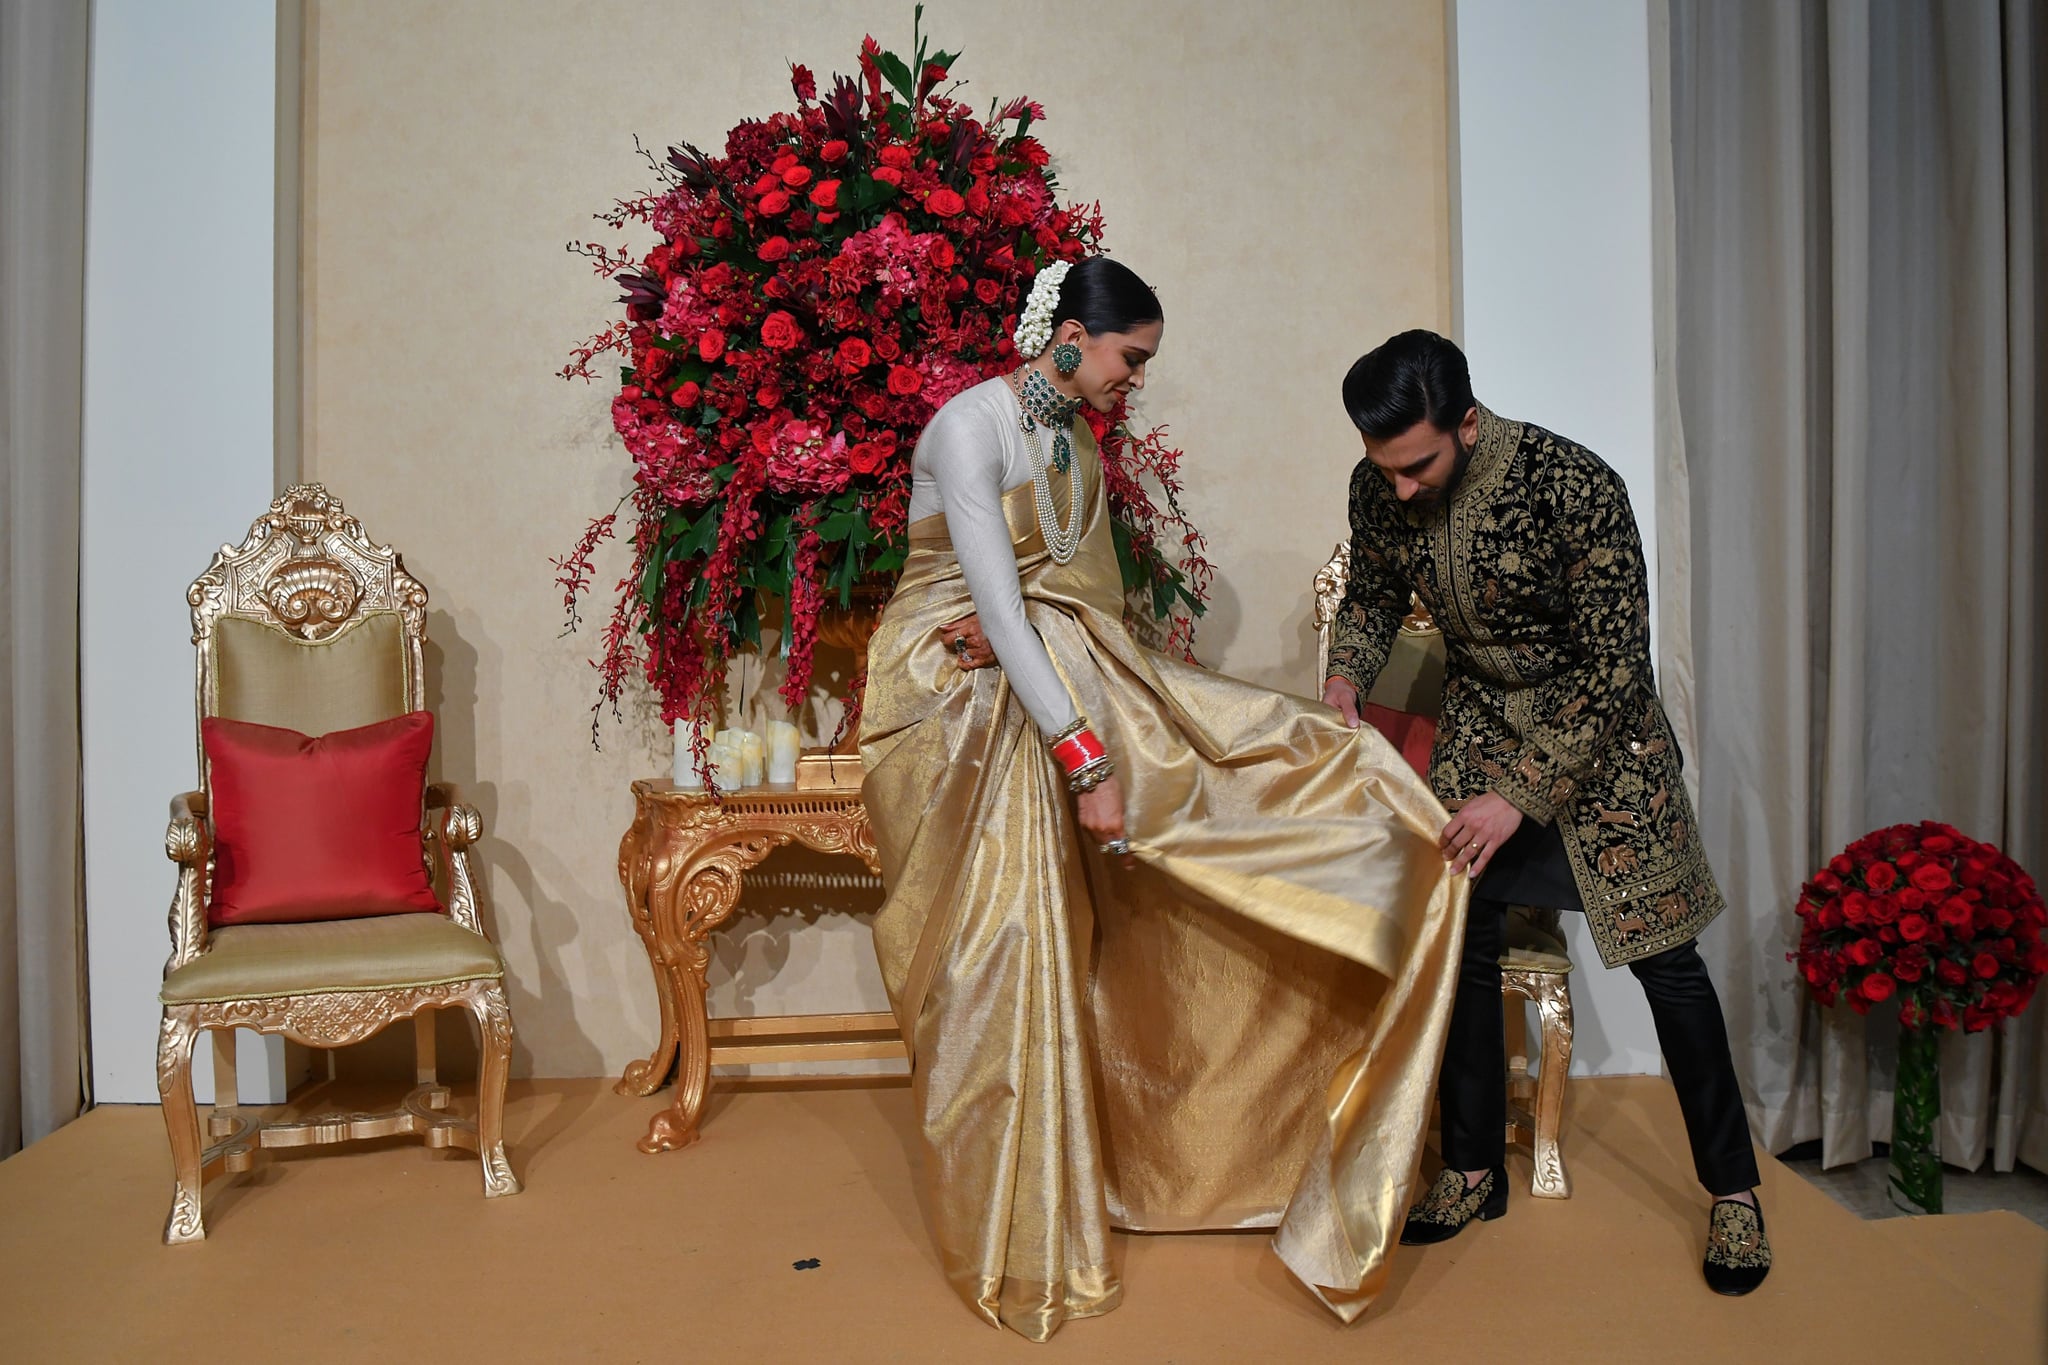 Deepika Padukone and Ranveer Singh to wed at the castle of dreams